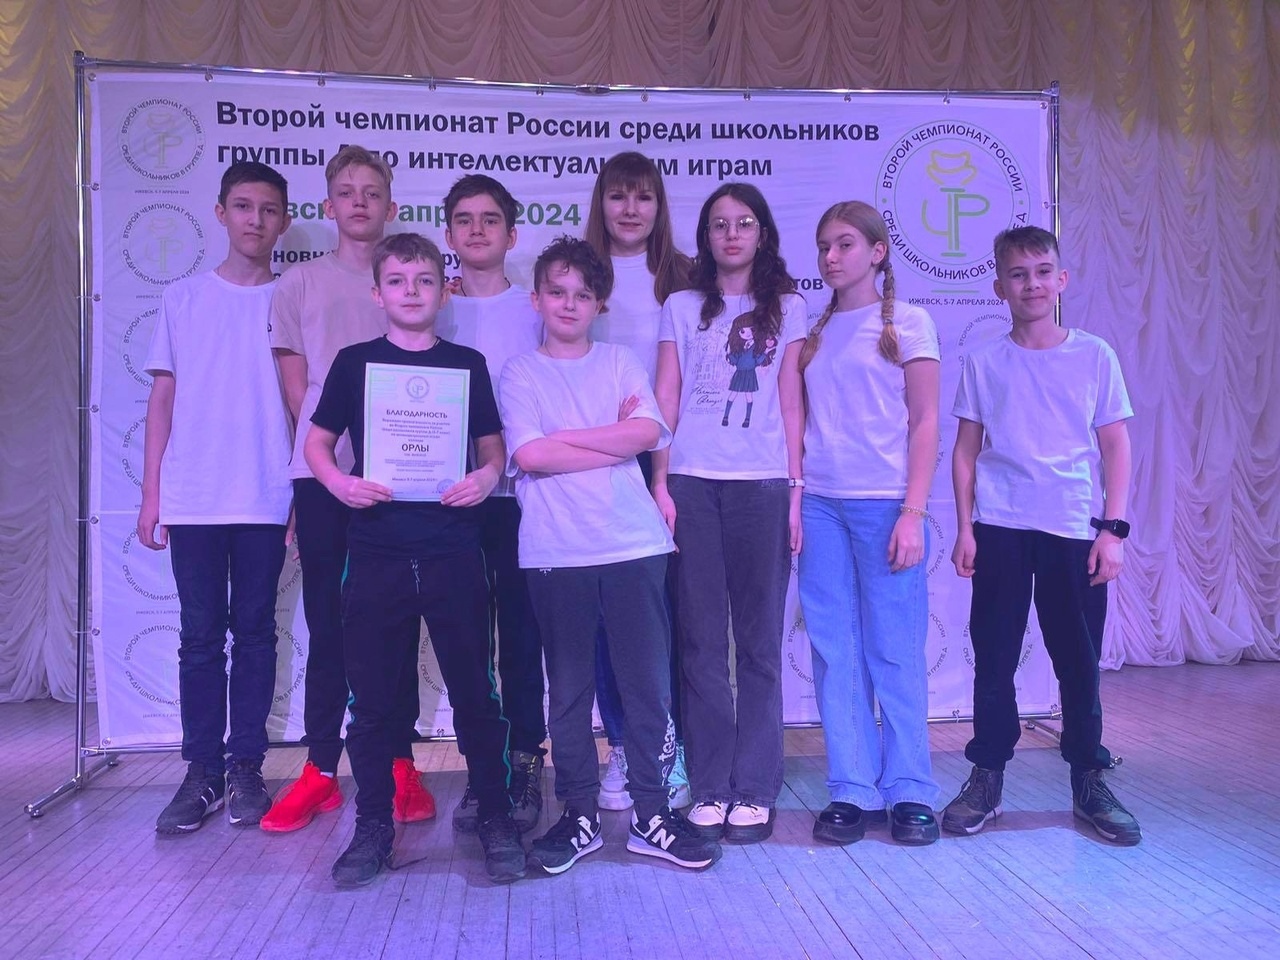 Команда Майской гимназии стала одной из лучших в финале II Чемпионата России среди школьников группы Д по интеллектуальным играм.